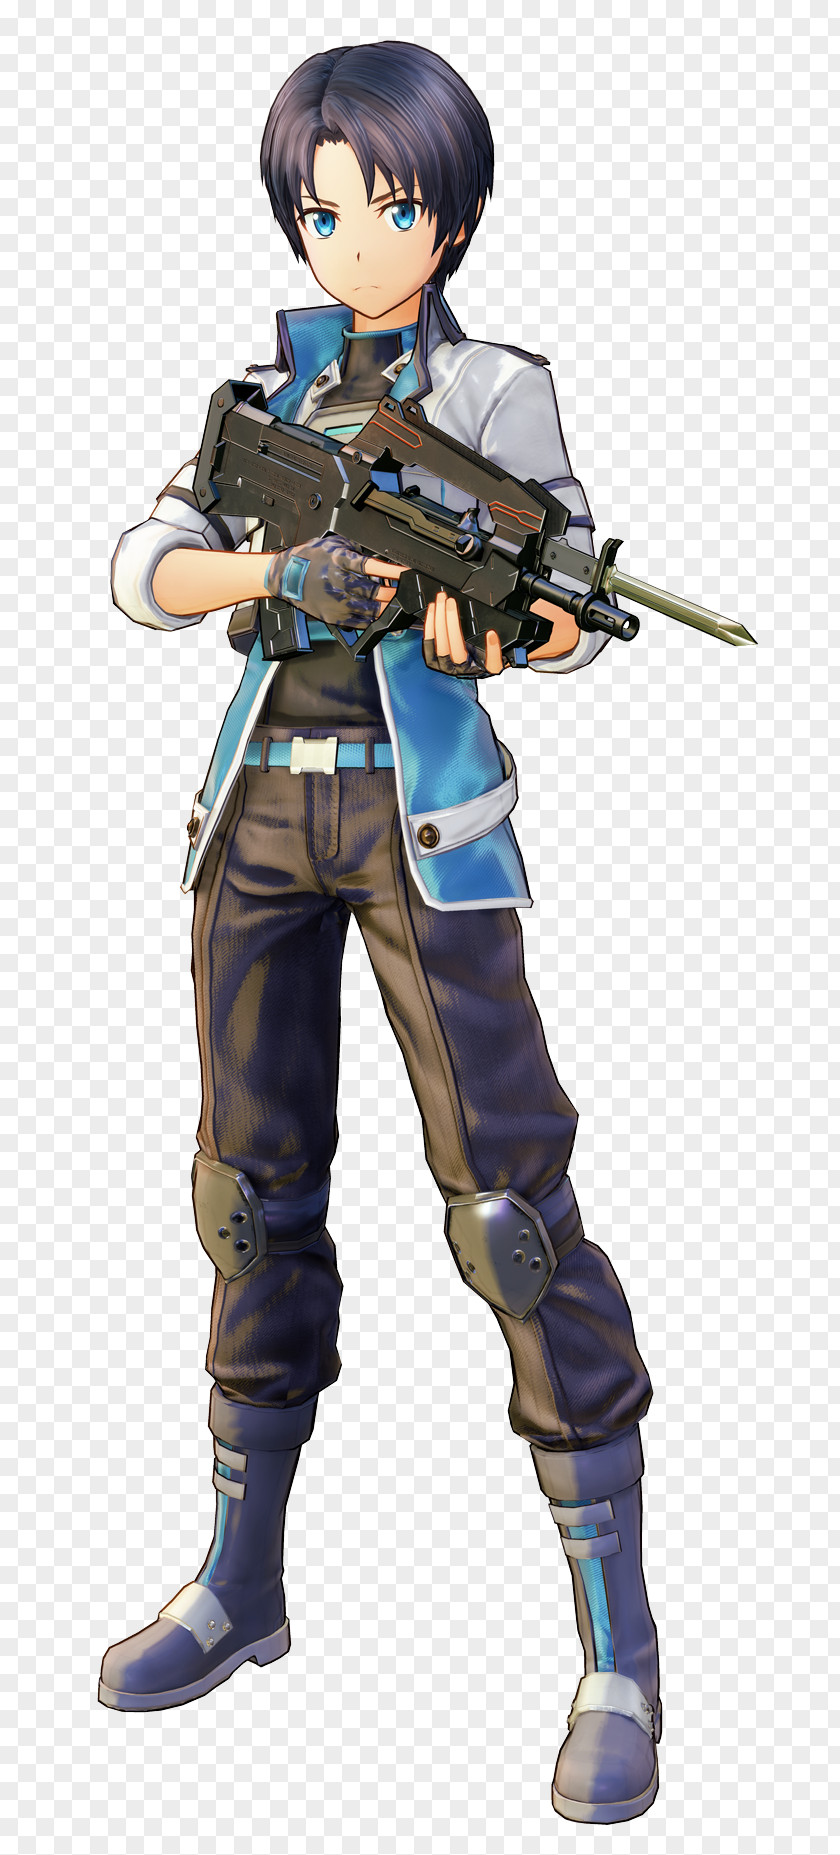 Sword Art Online: Fatal Bullet Leafa Character Kirito PNG